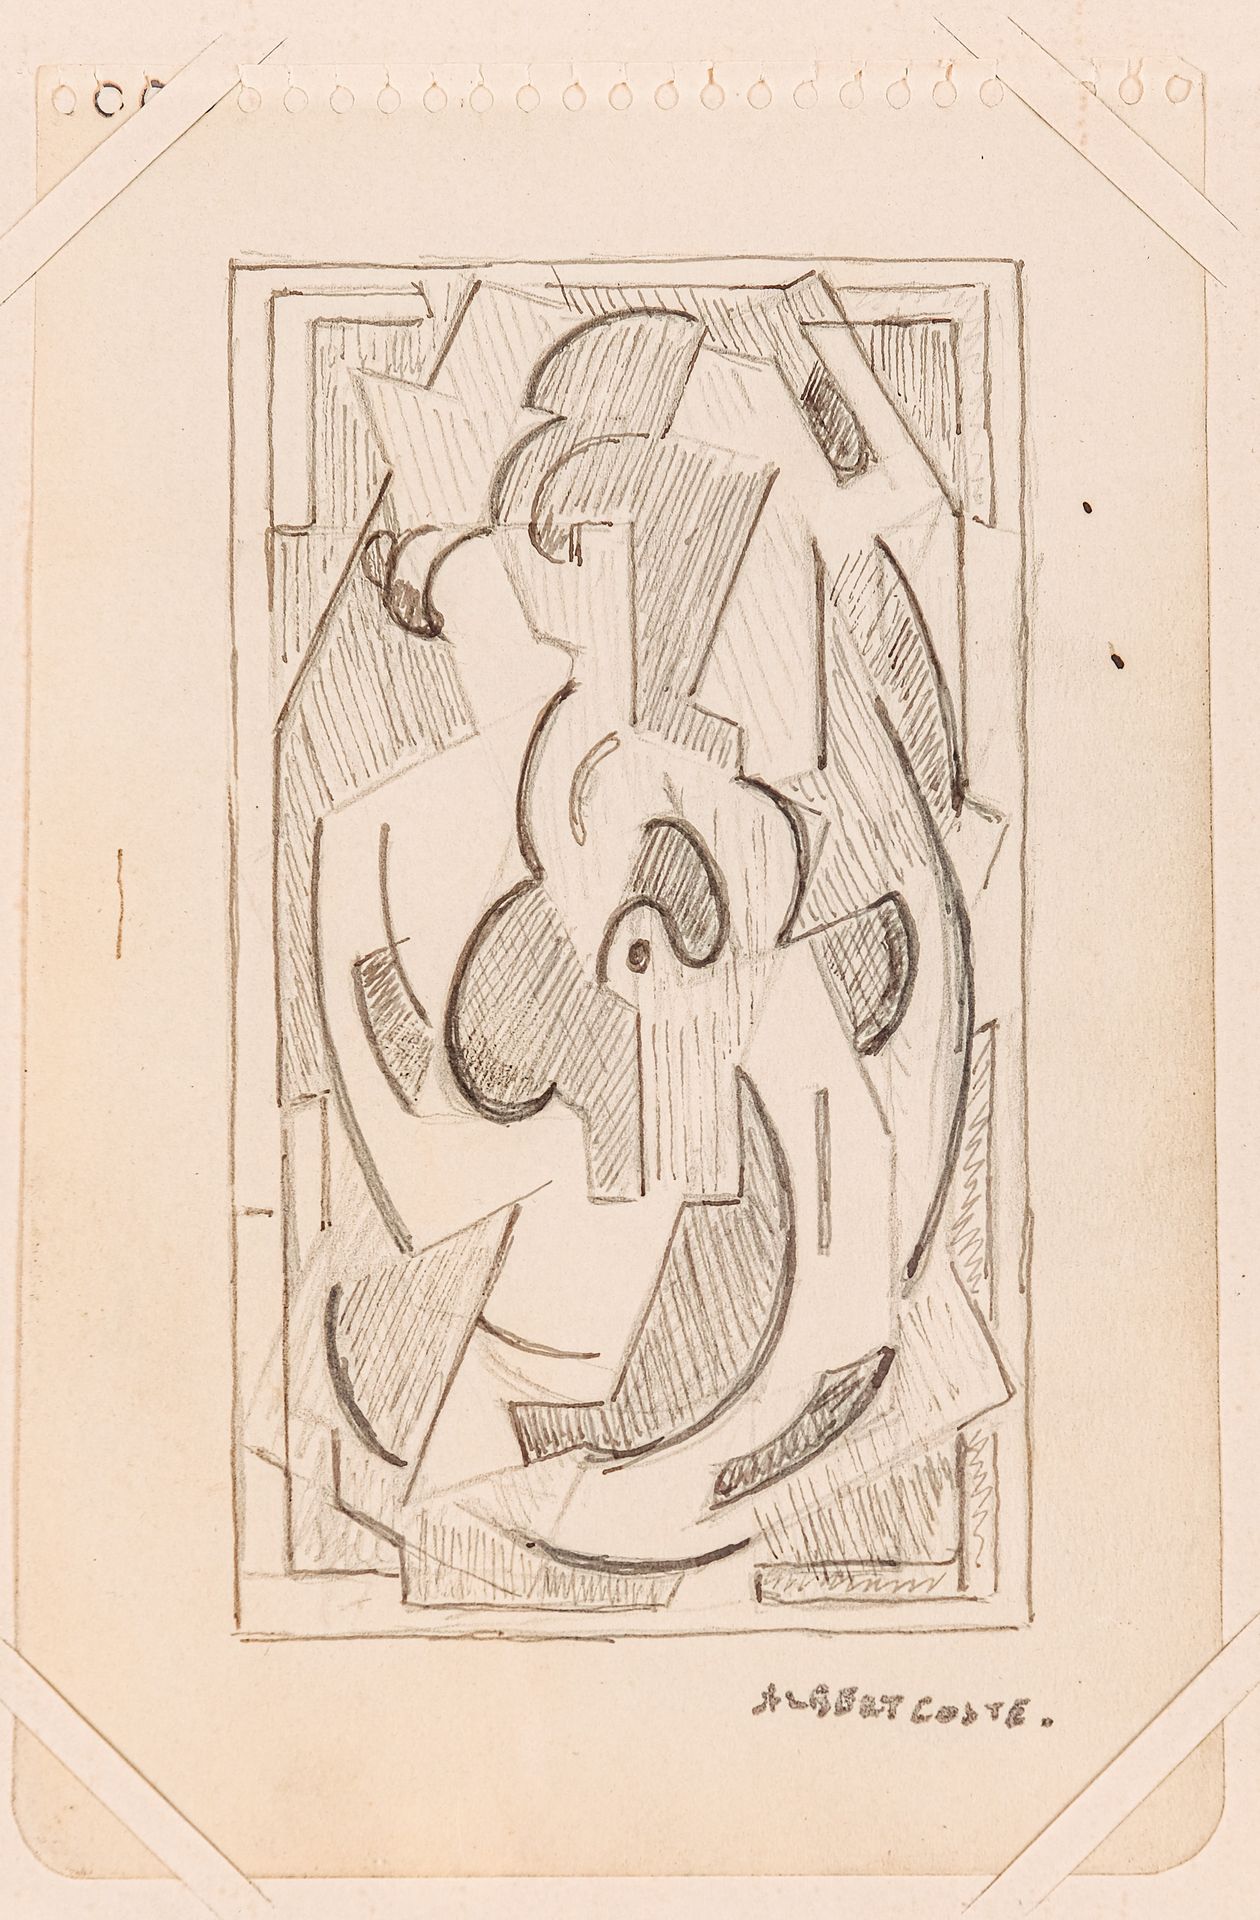 Null Albert COSTE (1896-1985)

Composición

Lápiz

Firmado abajo a la derecha

1&hellip;